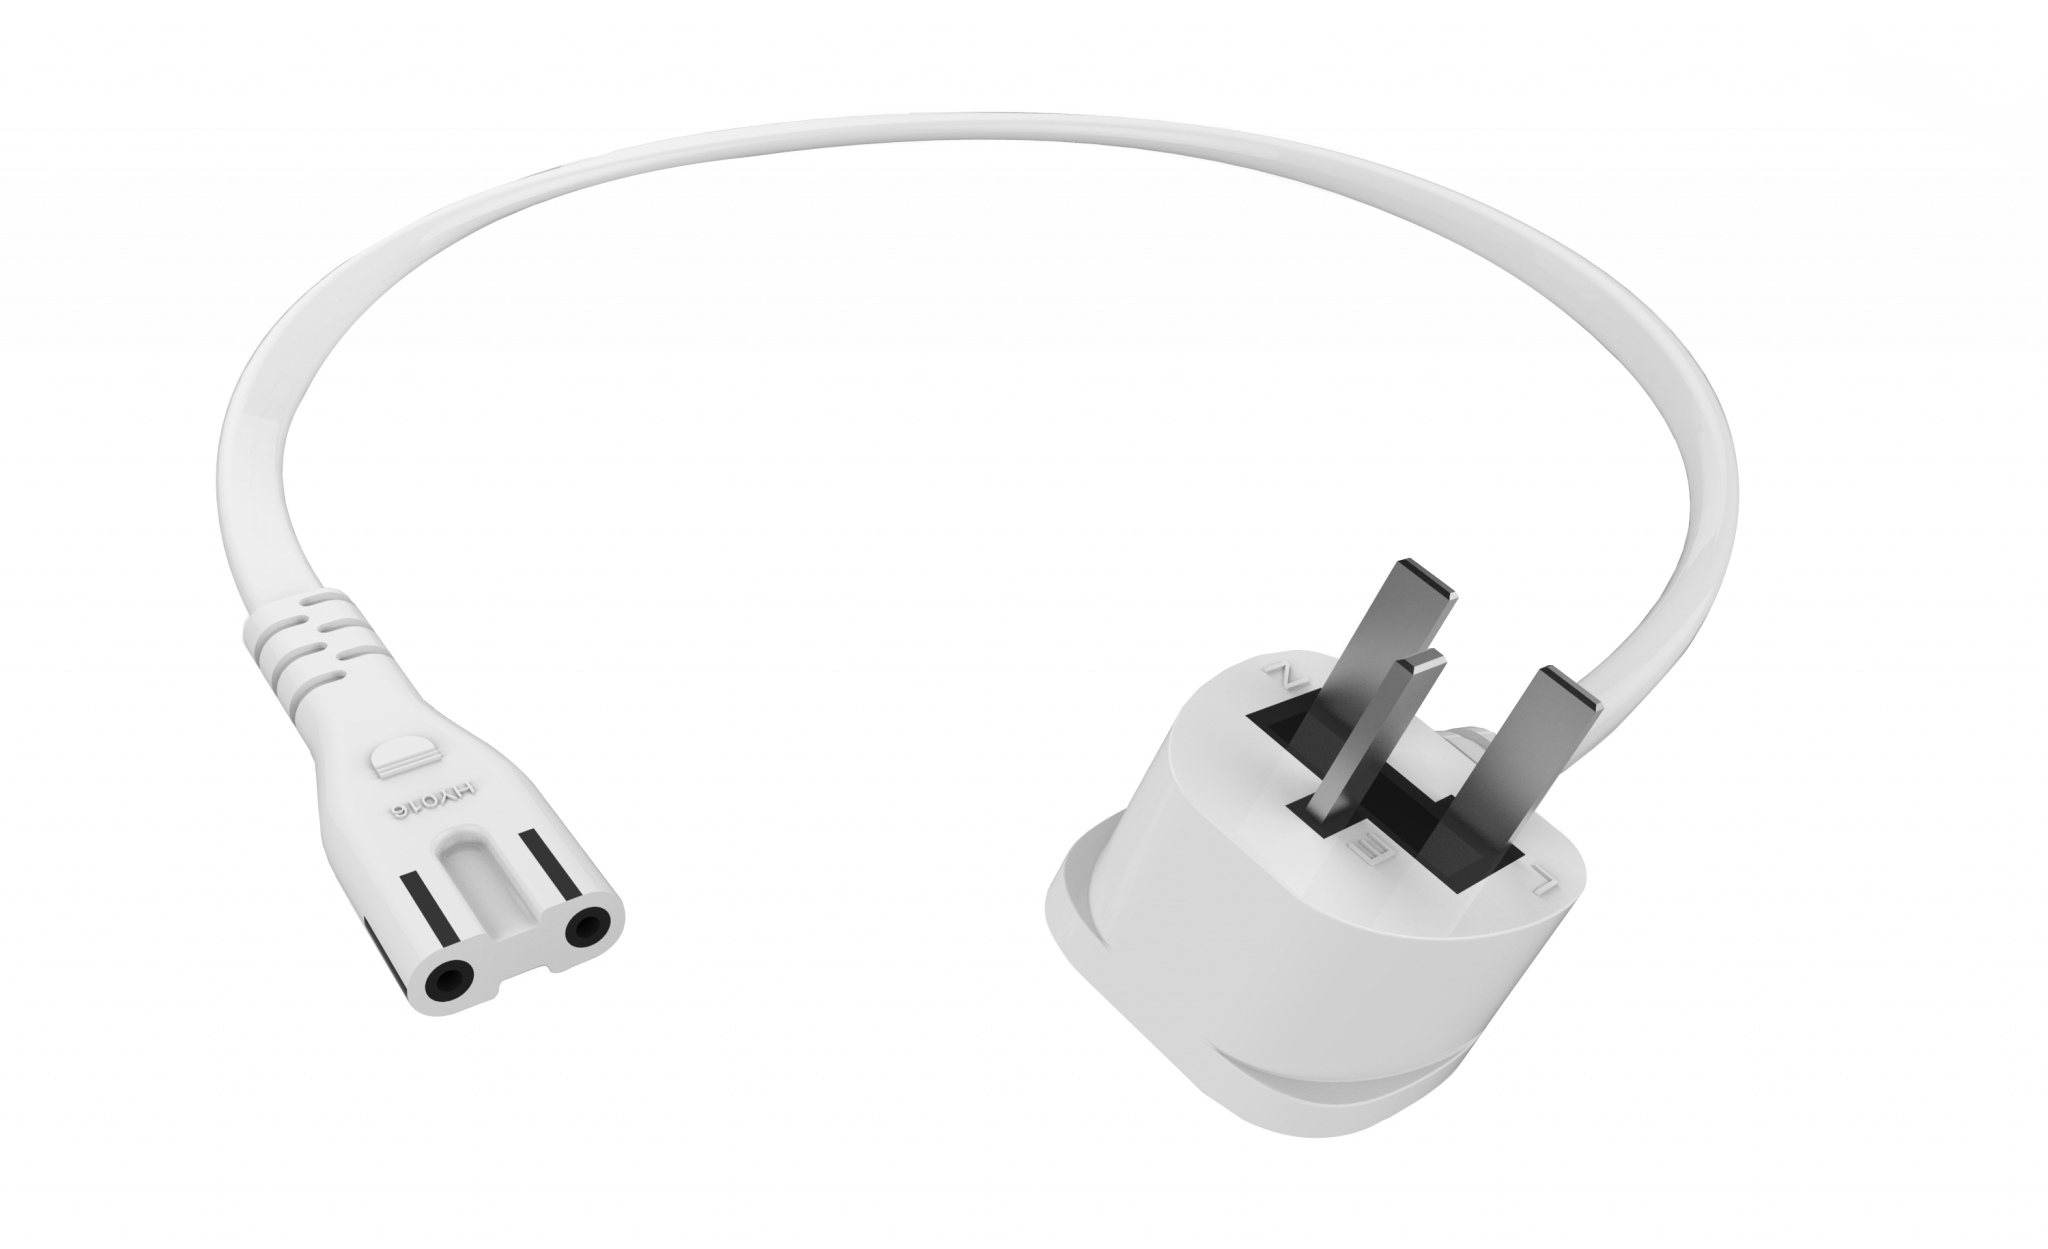 An image showing Cable profesional blanco de alimentación y tipo 8 de 0,5 m (1,6 pies) para R.U.